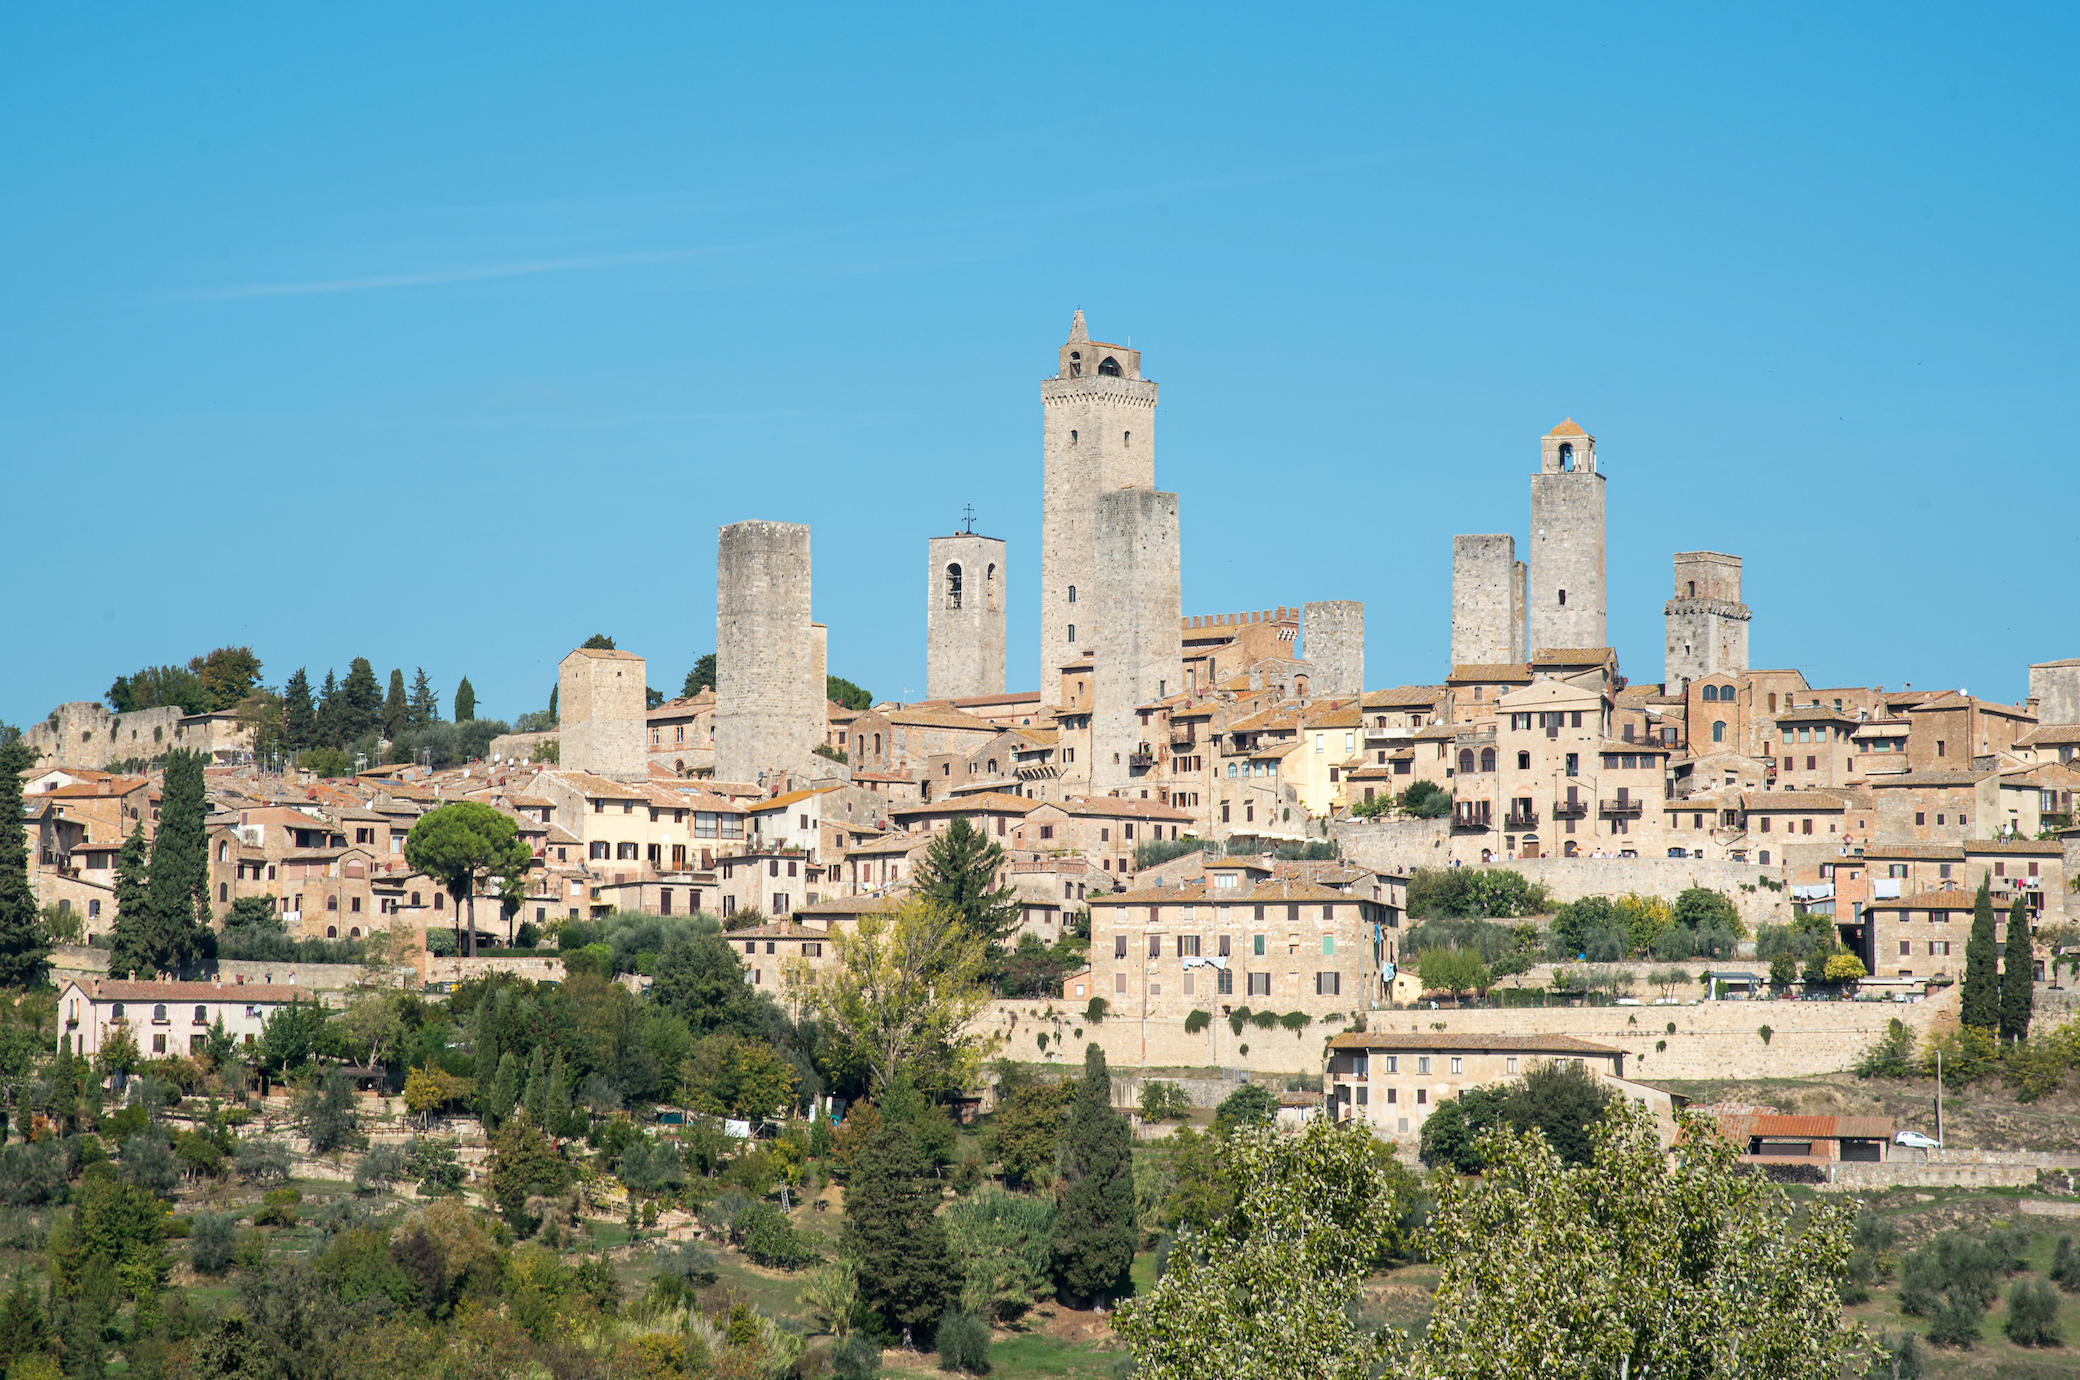 Best sights in San Gimignano, Traveler's guide, Hidden gems, Tuscan beauty, 2080x1380 HD Desktop